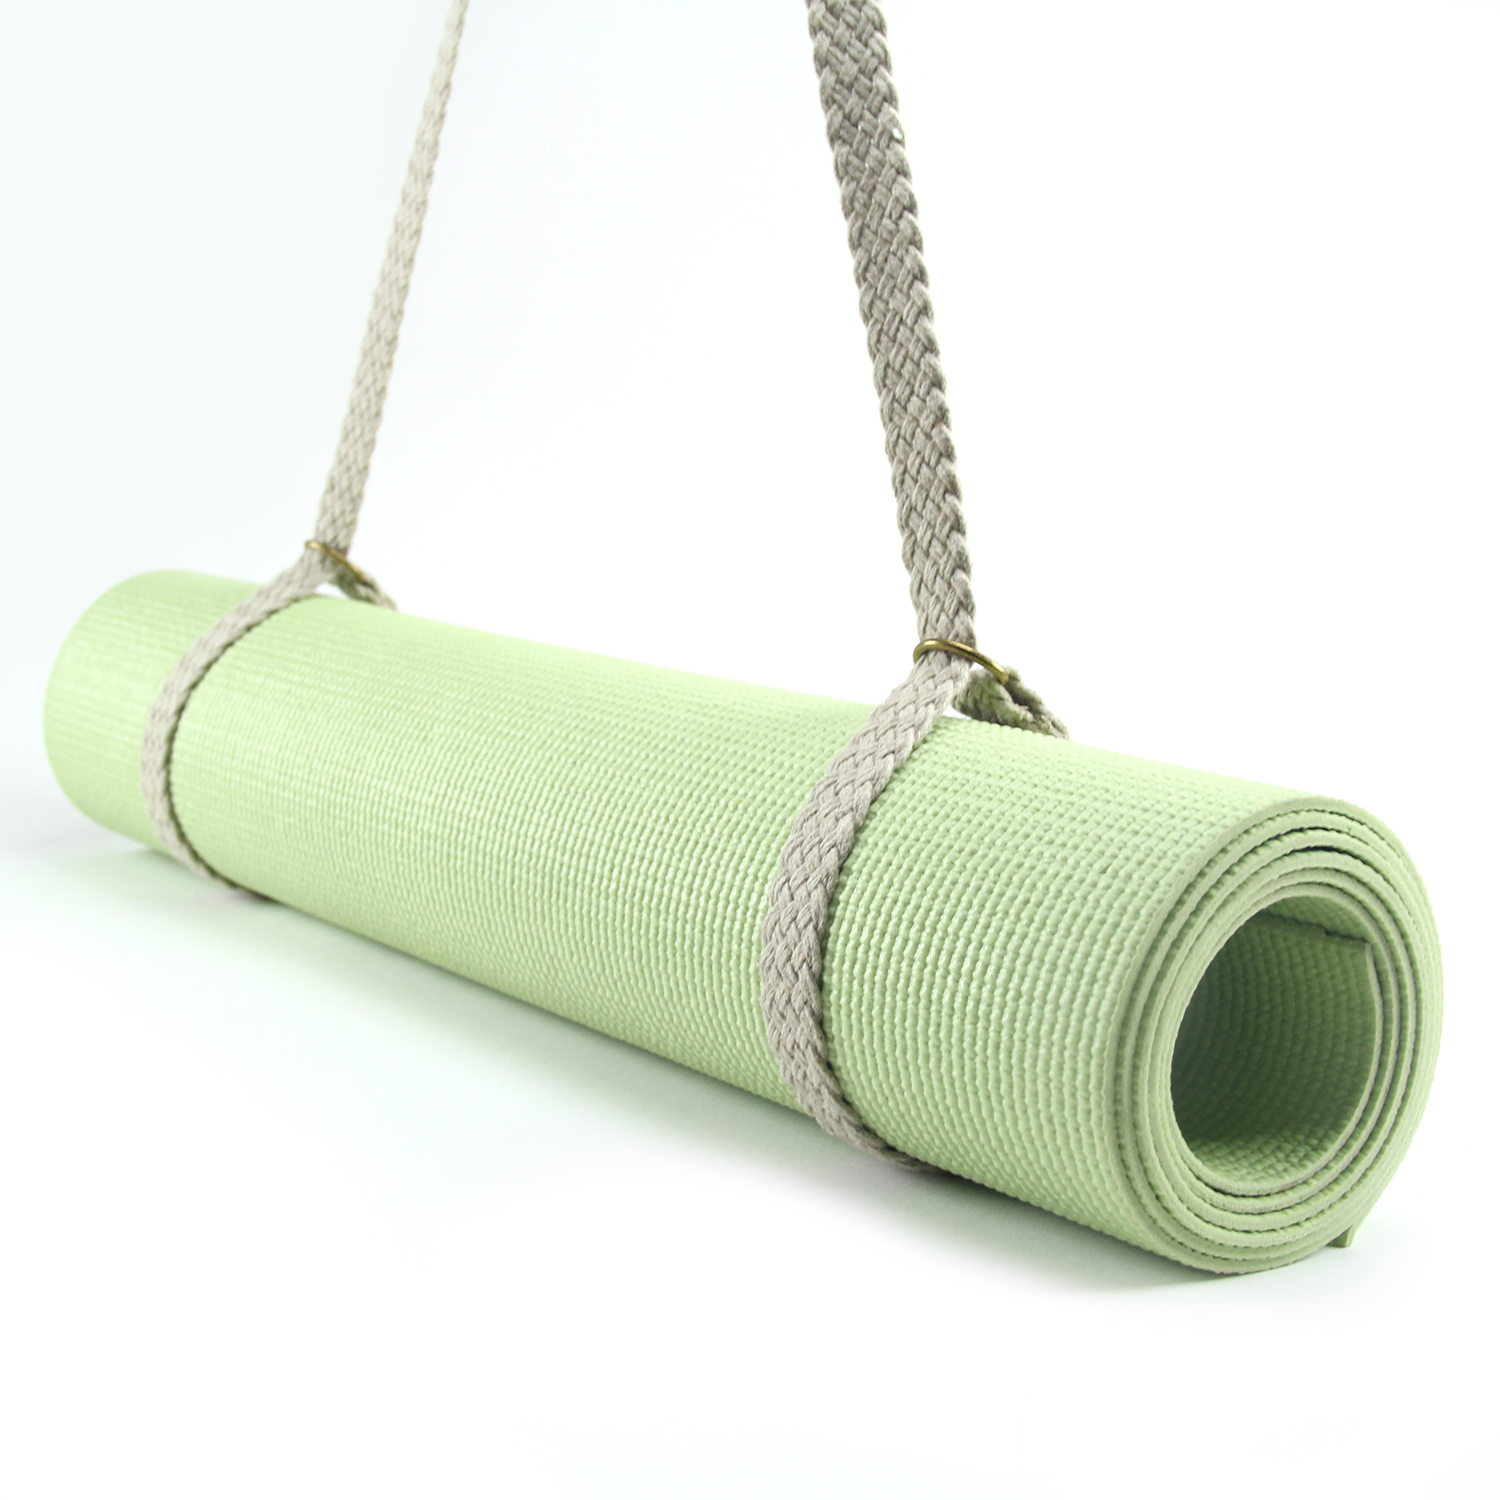 Yoga Mat Bags & Slings - Yoga Mat Bags, Slings, Straps